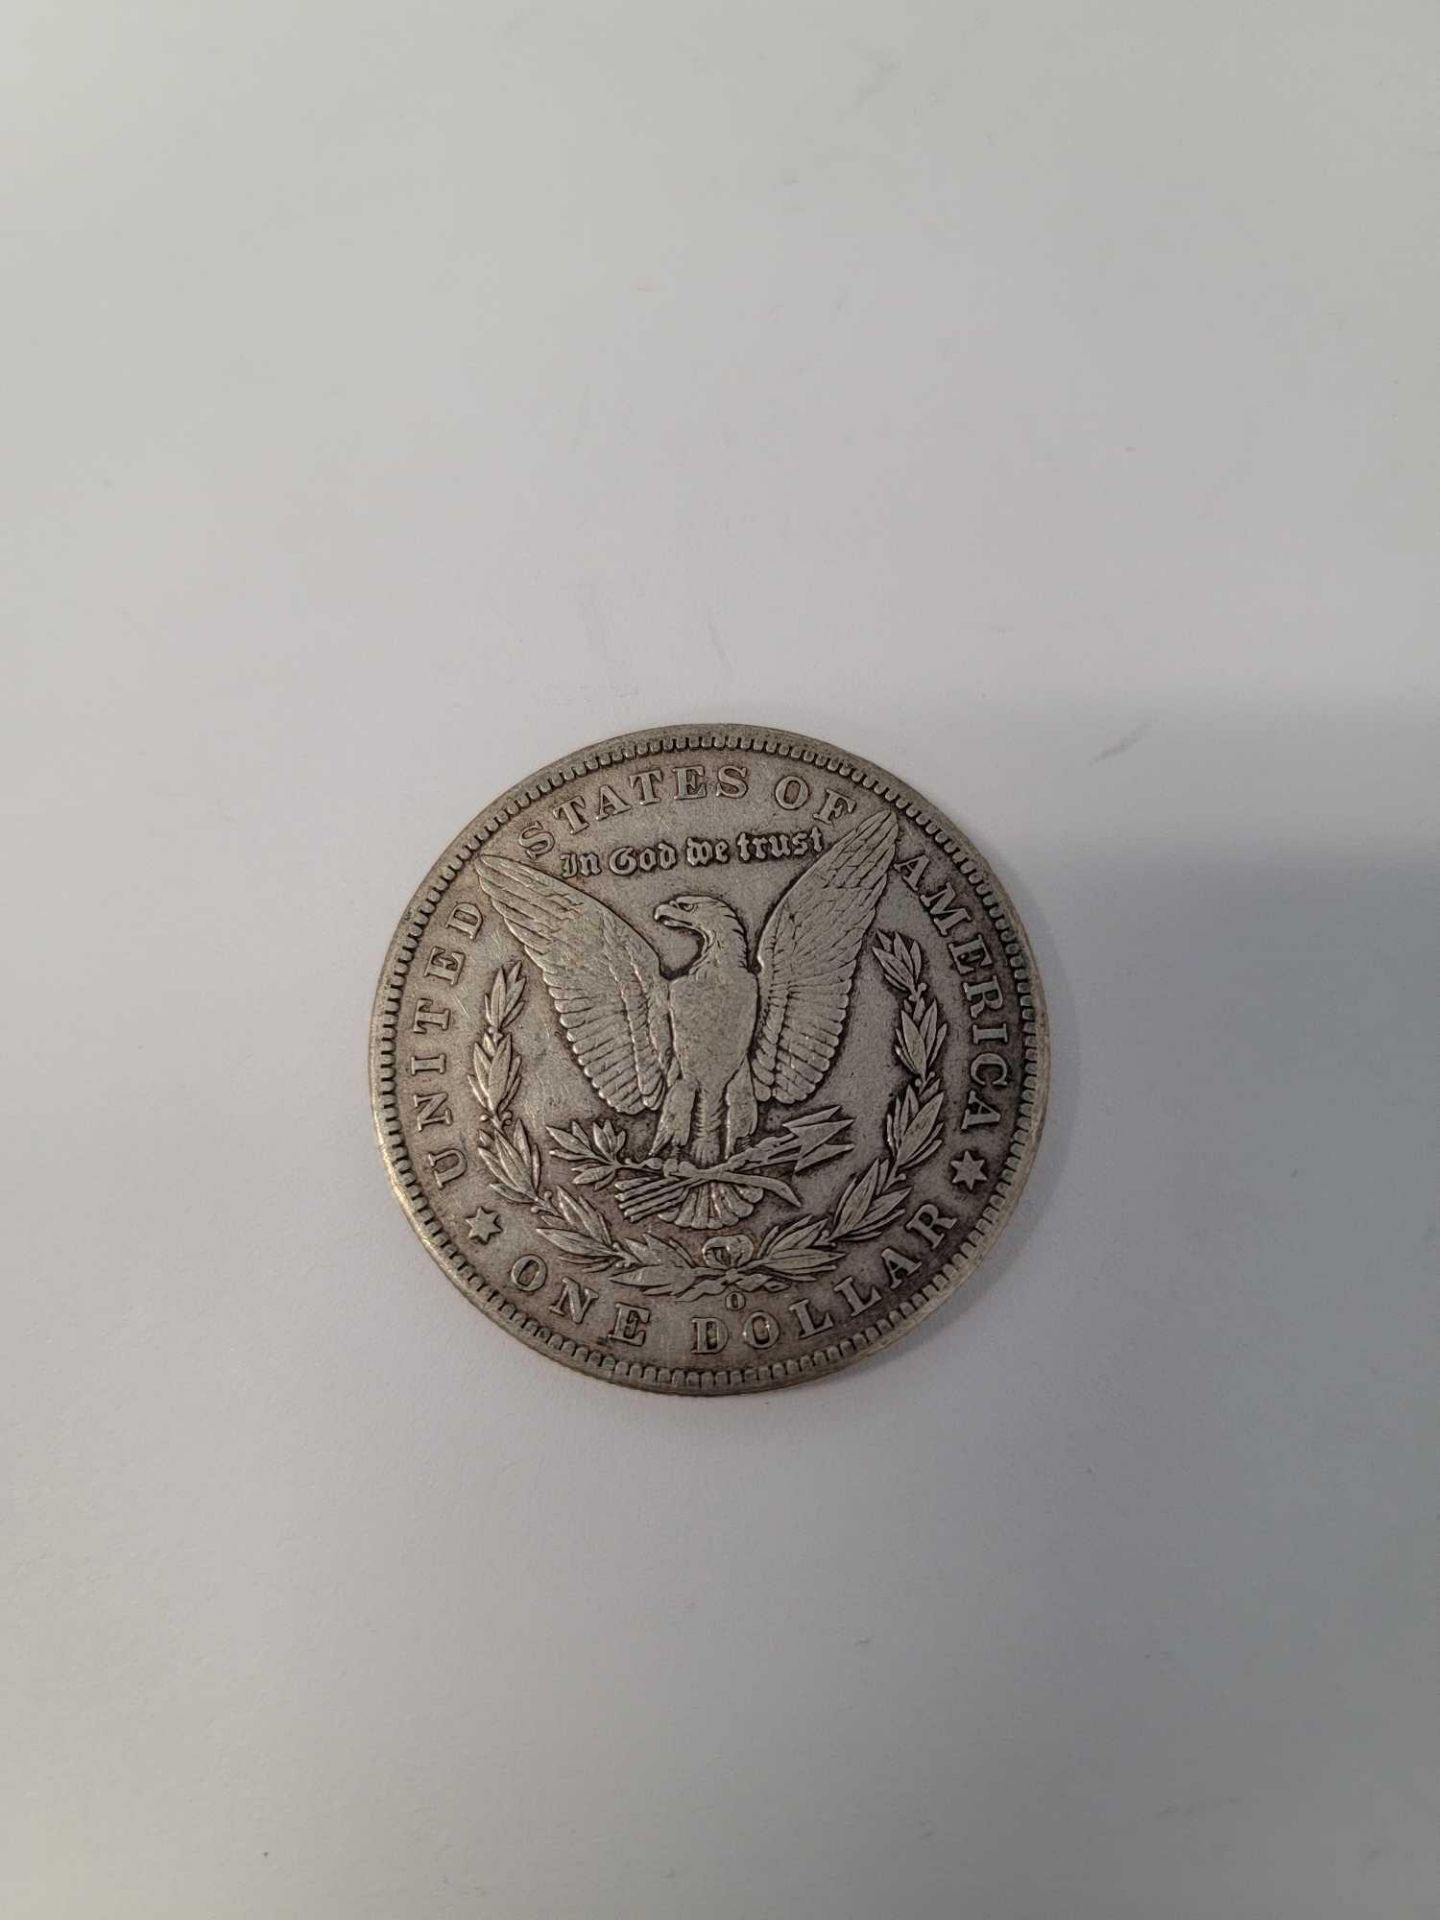 1901 Morgan Dollar - Image 2 of 2